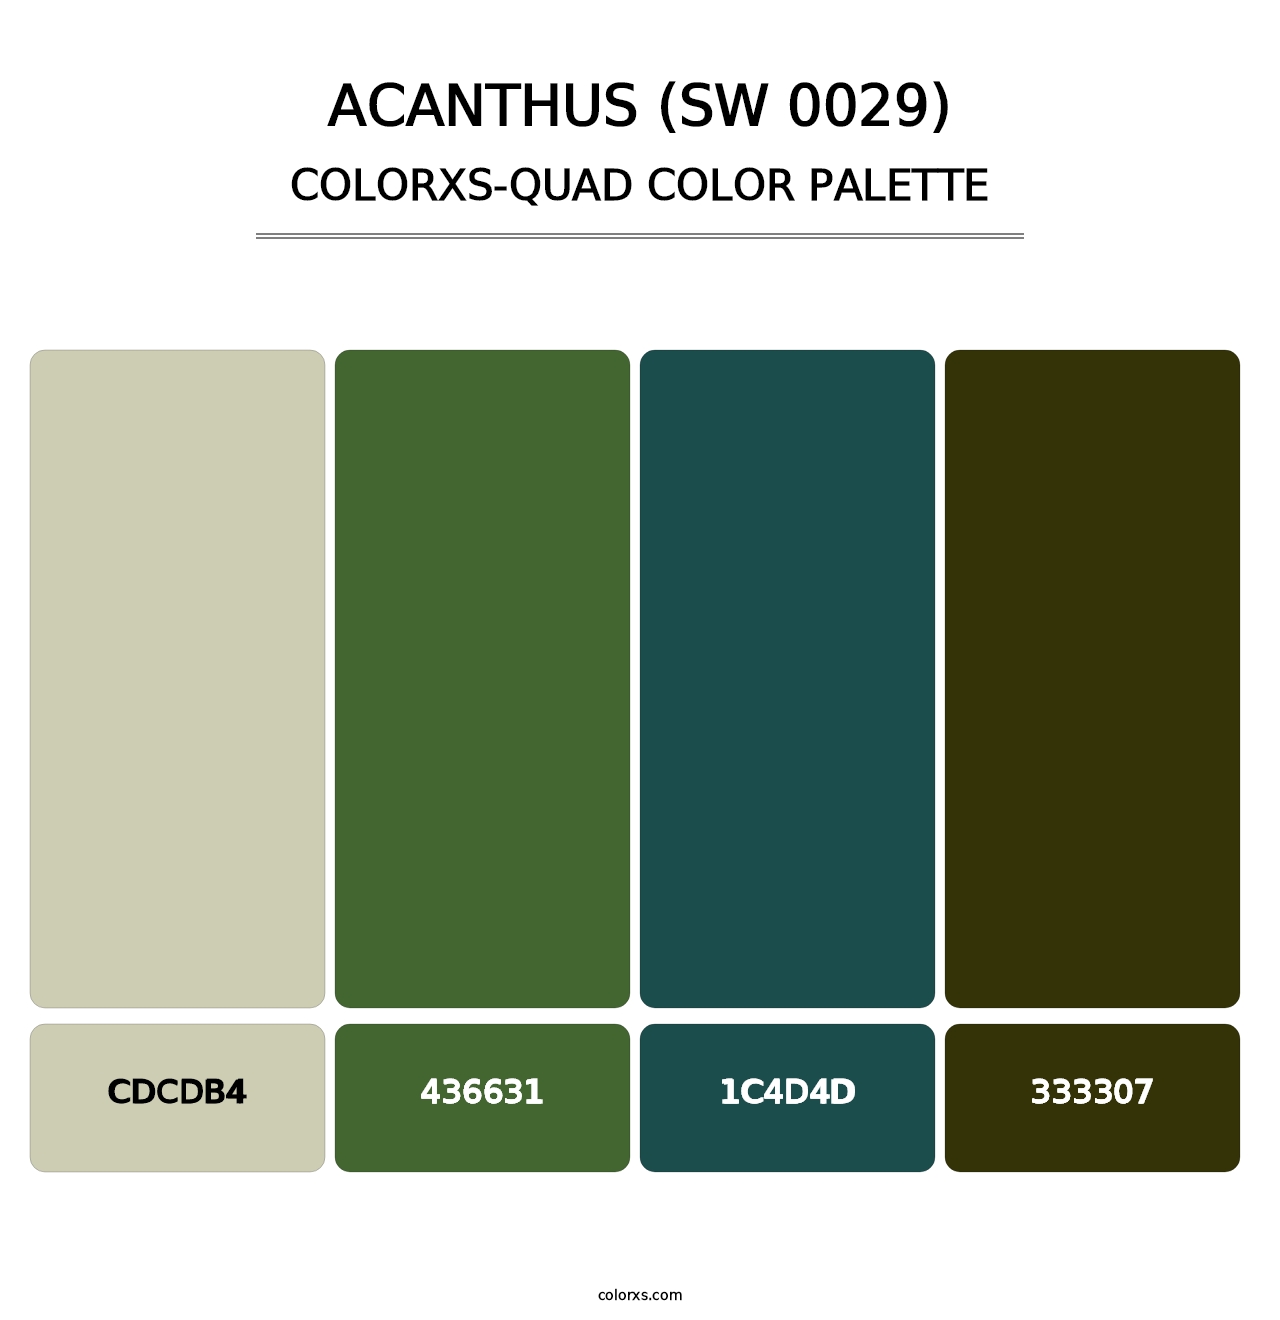 Acanthus (SW 0029) - Colorxs Quad Palette